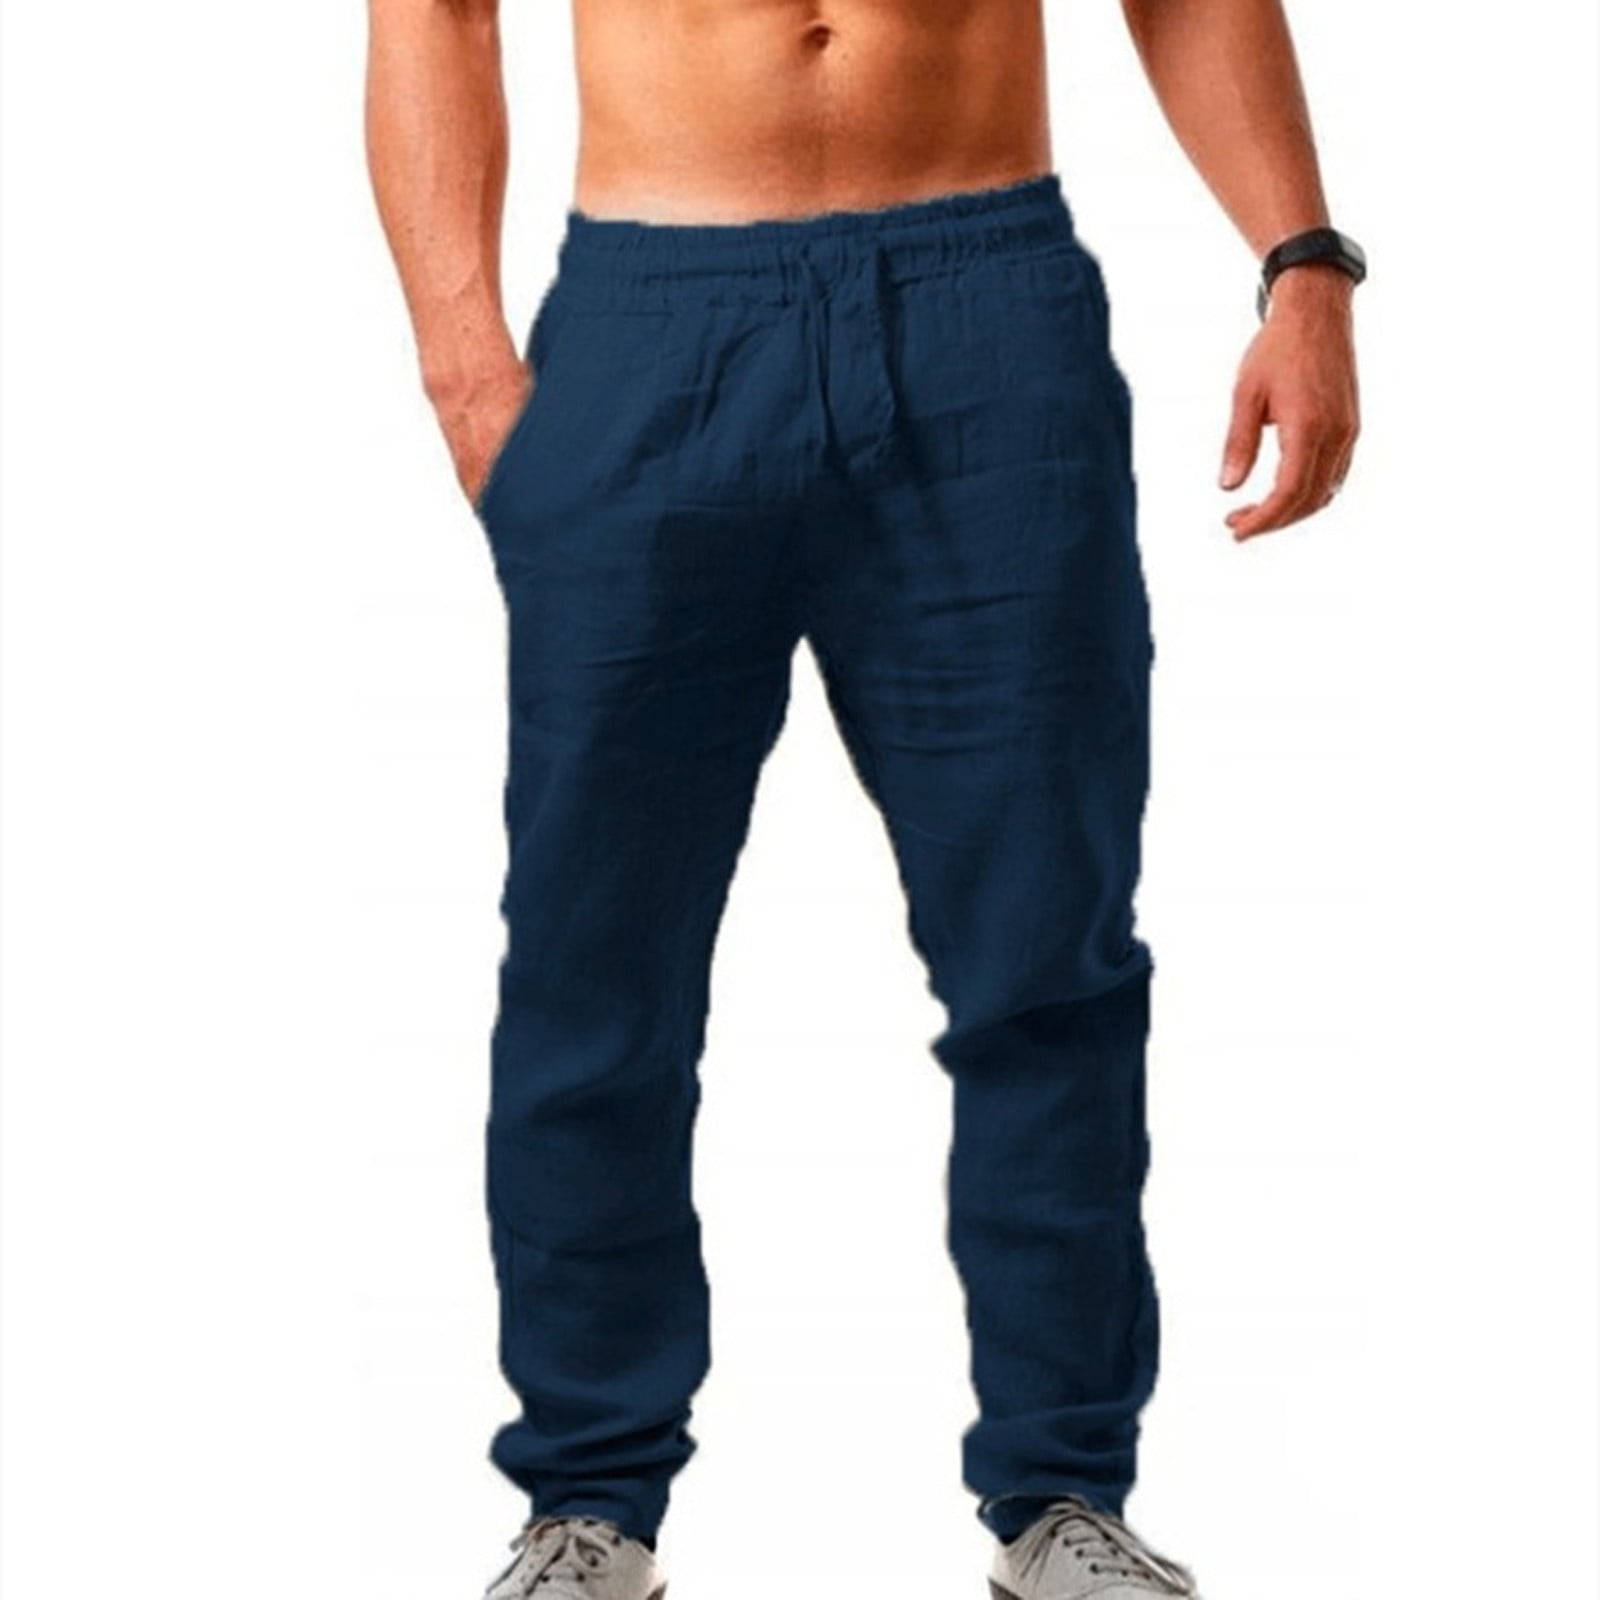 amidoa Men's Solid Cotton Line Pants Elastic Waist Baggy Slacks Leisure ...